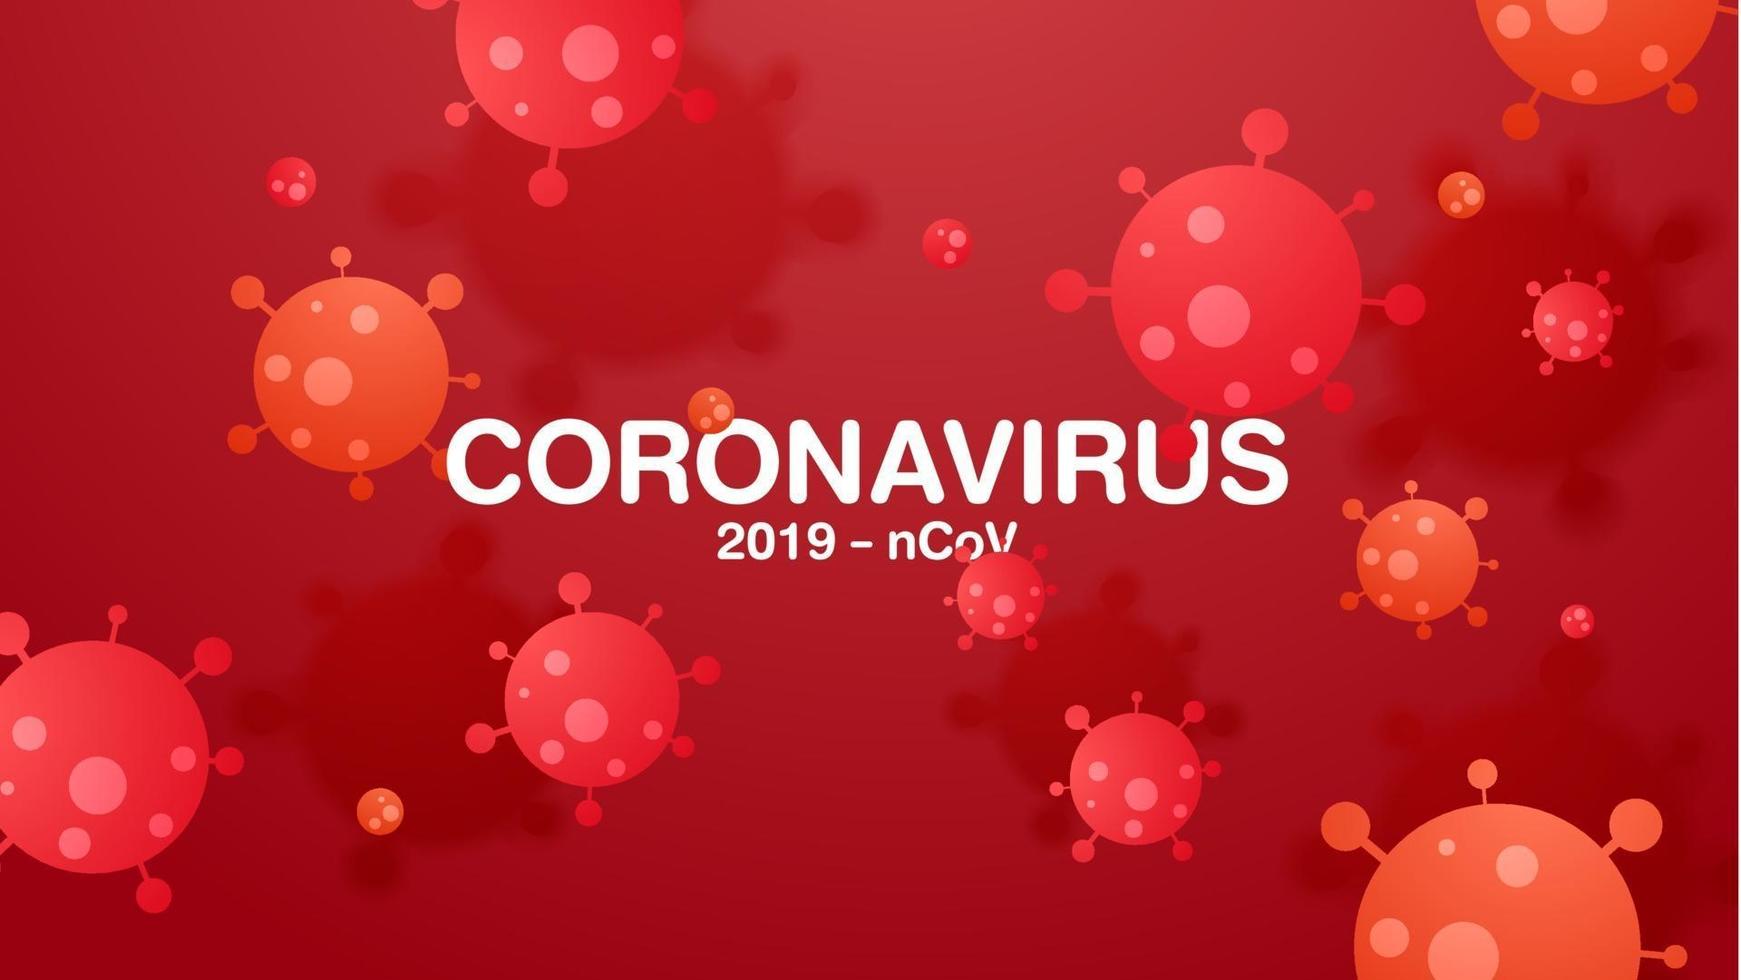 Coronavirus 2019-ncov and virus background. vector